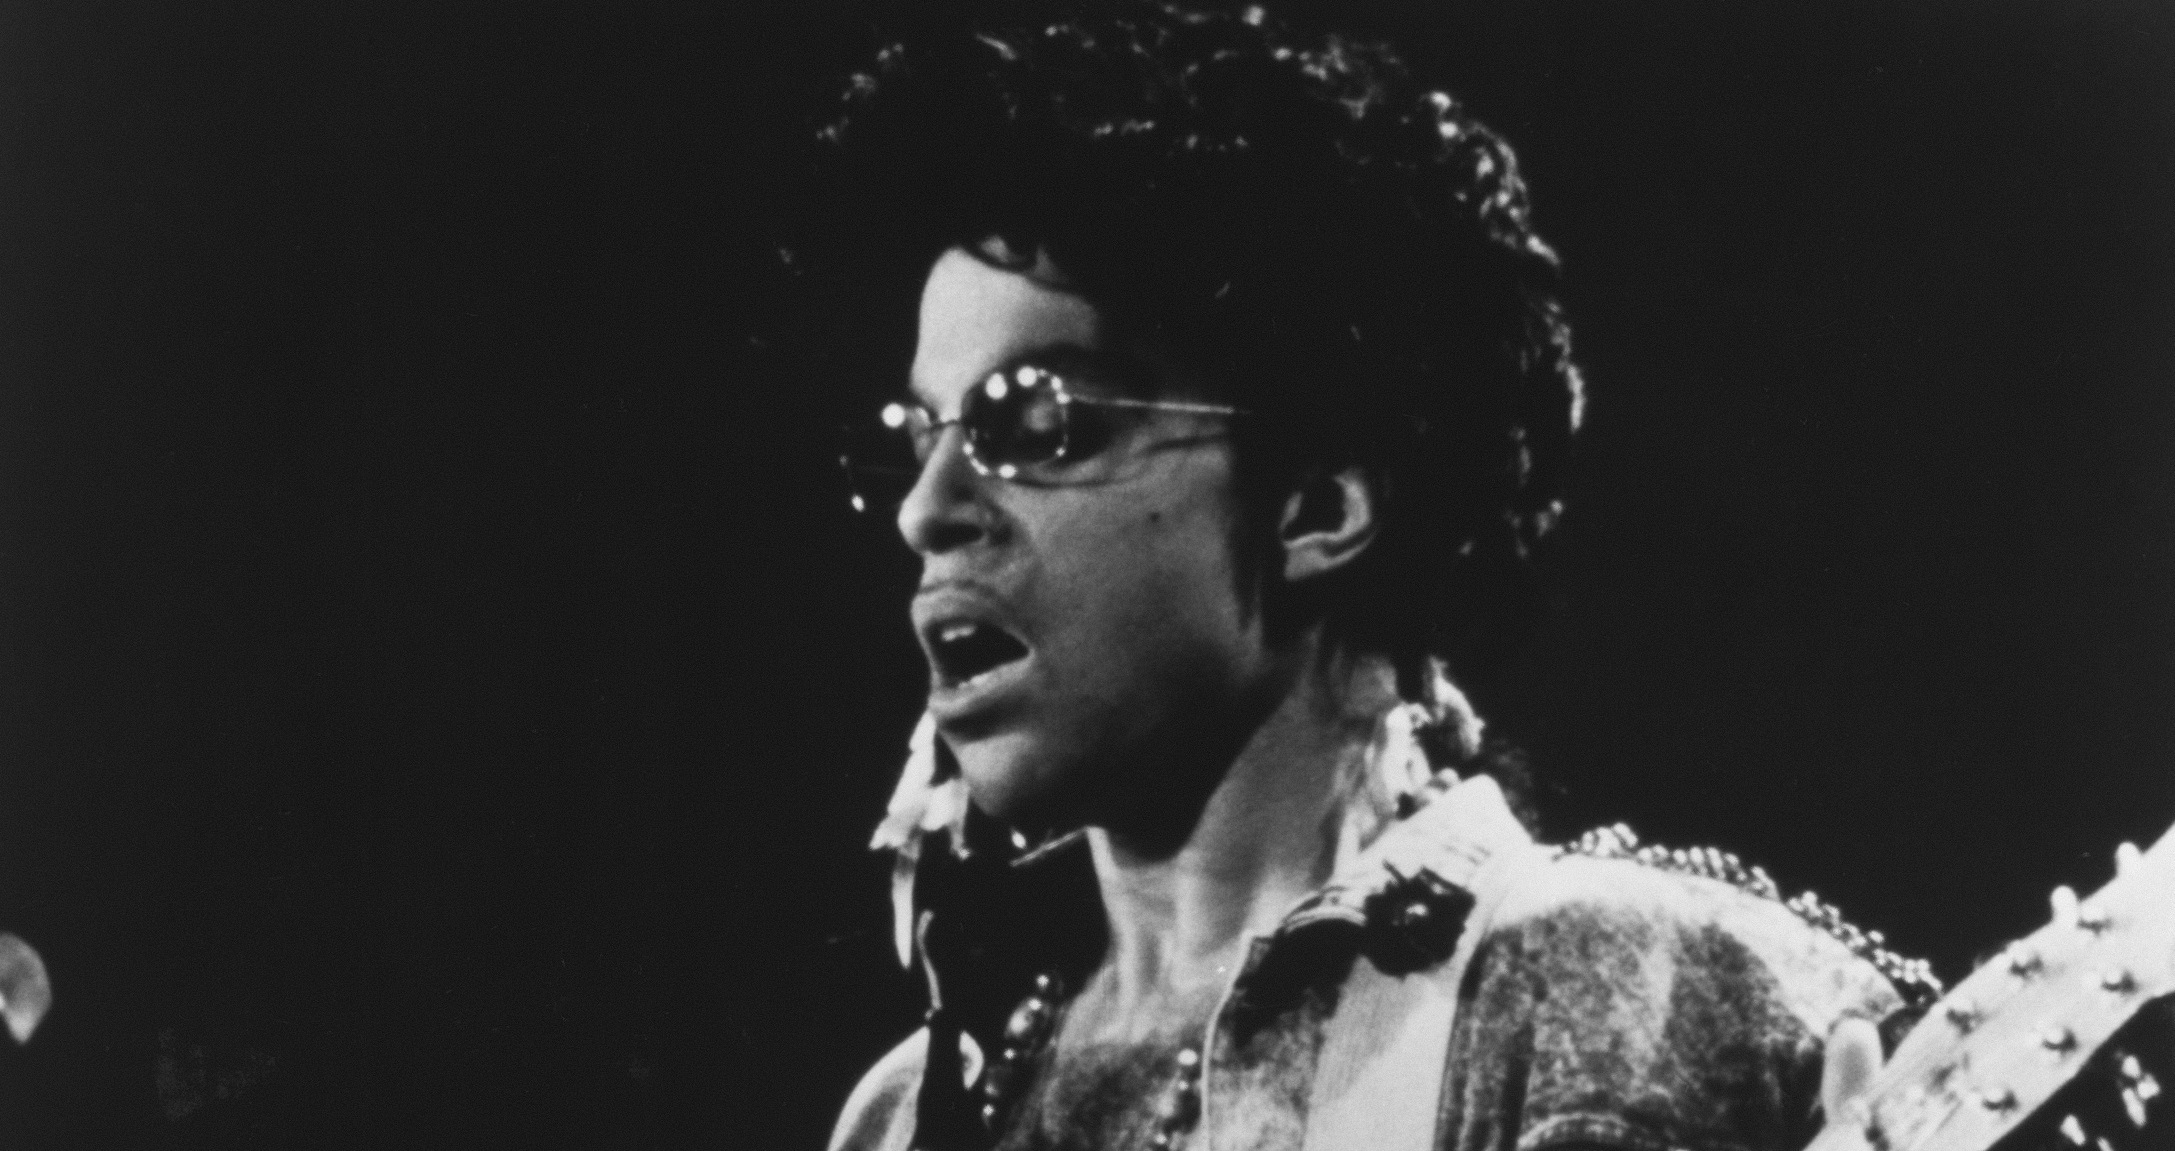 Spevák, skladateľ a multiinštrumentalista Prince sa predstaví v cykle Music & Film